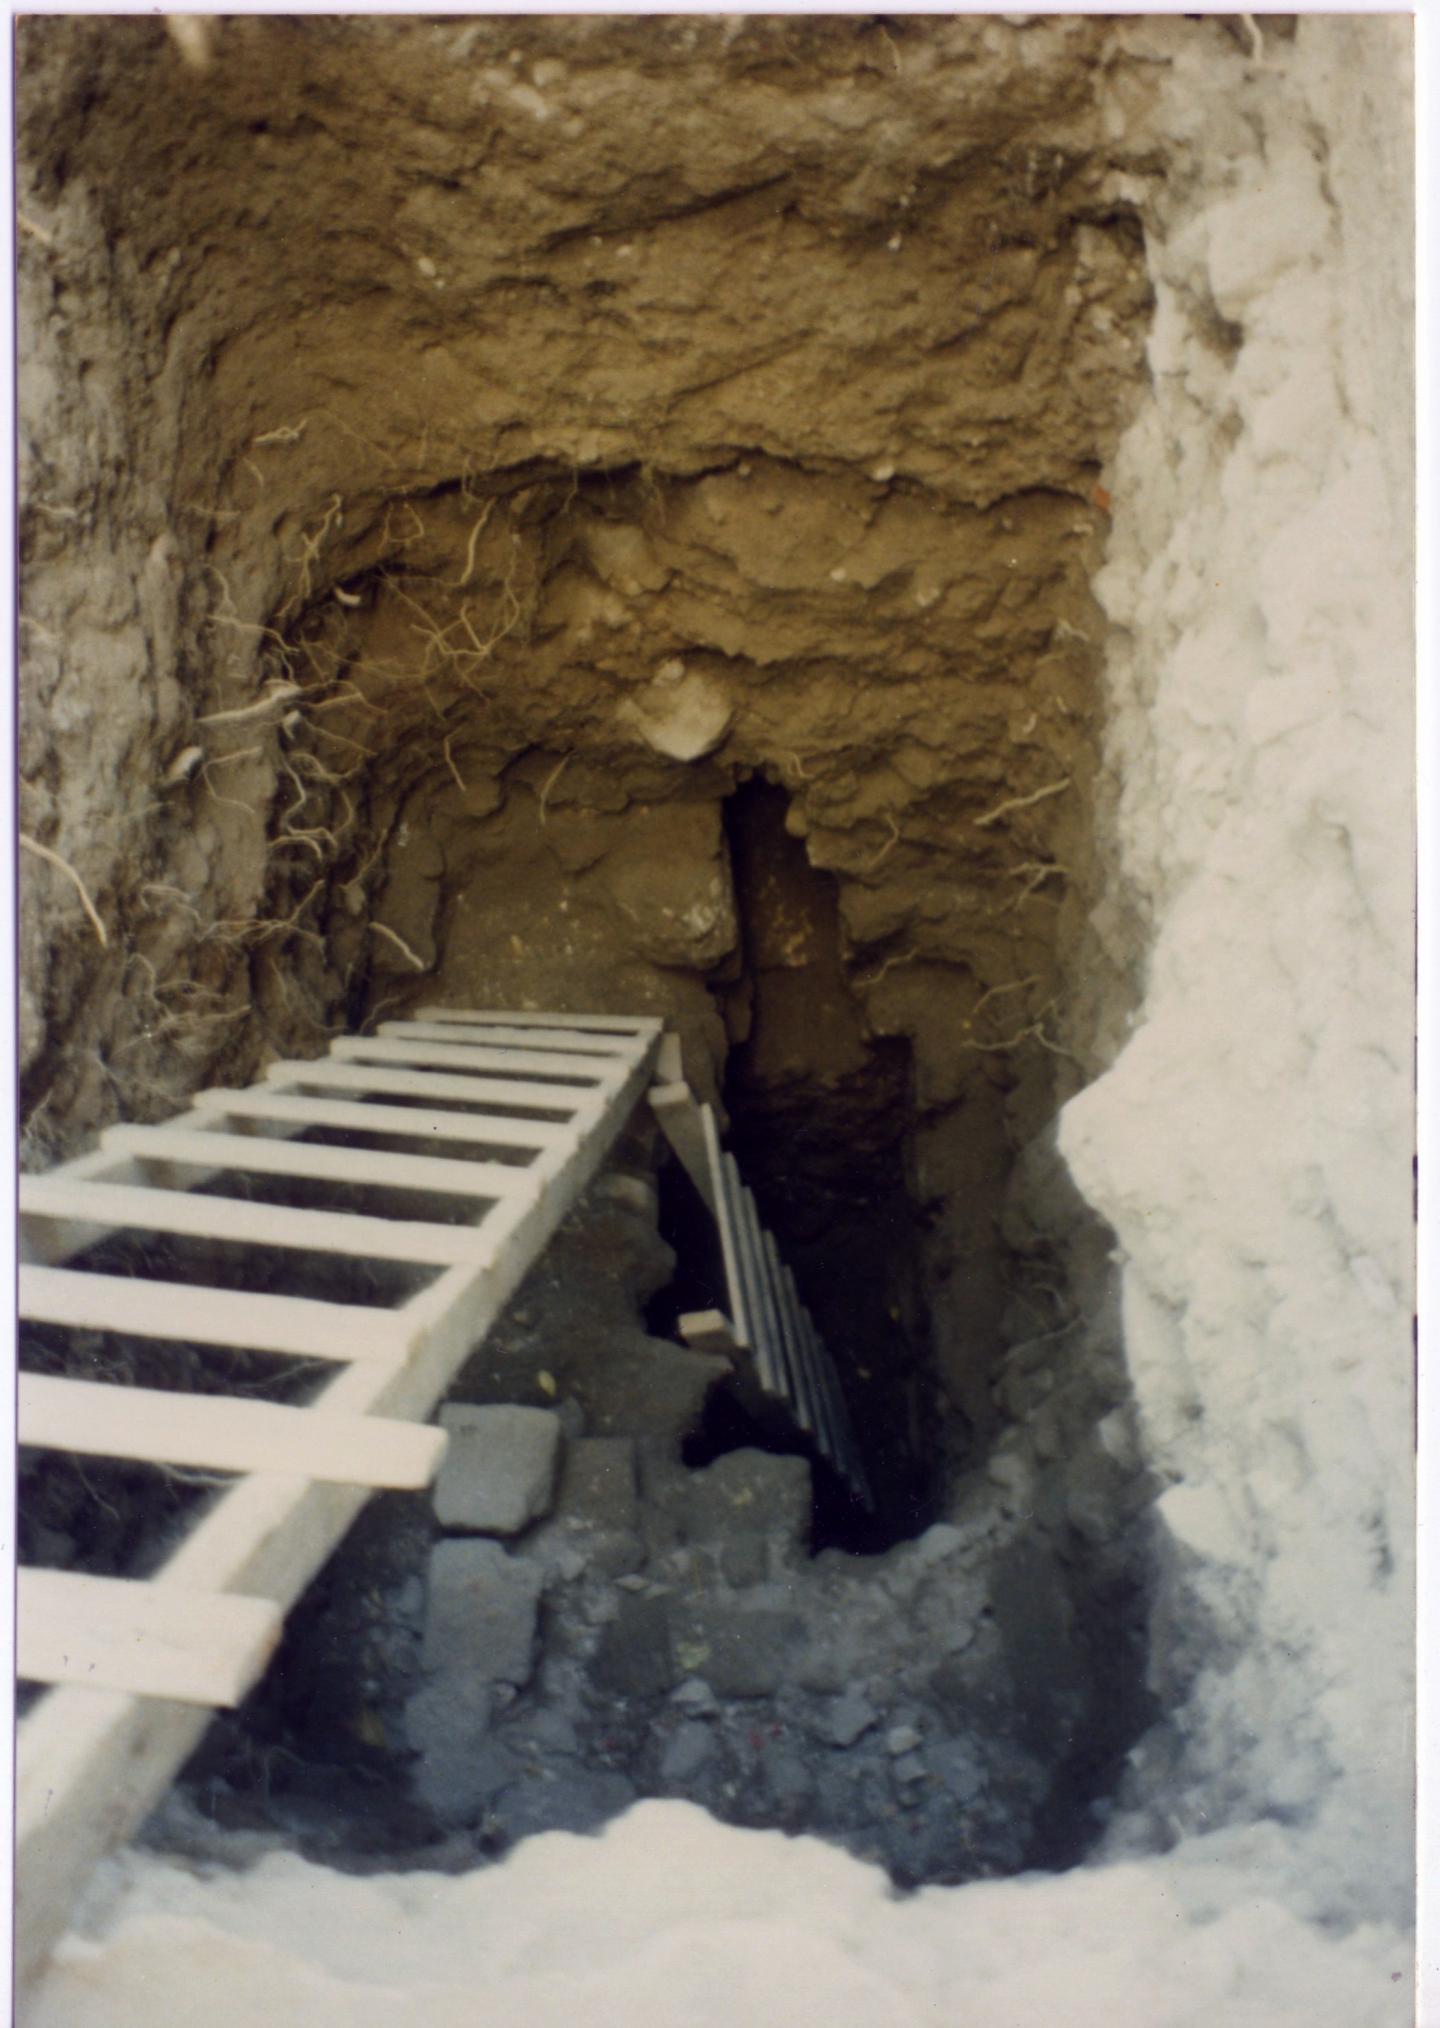 Latrine Excavation